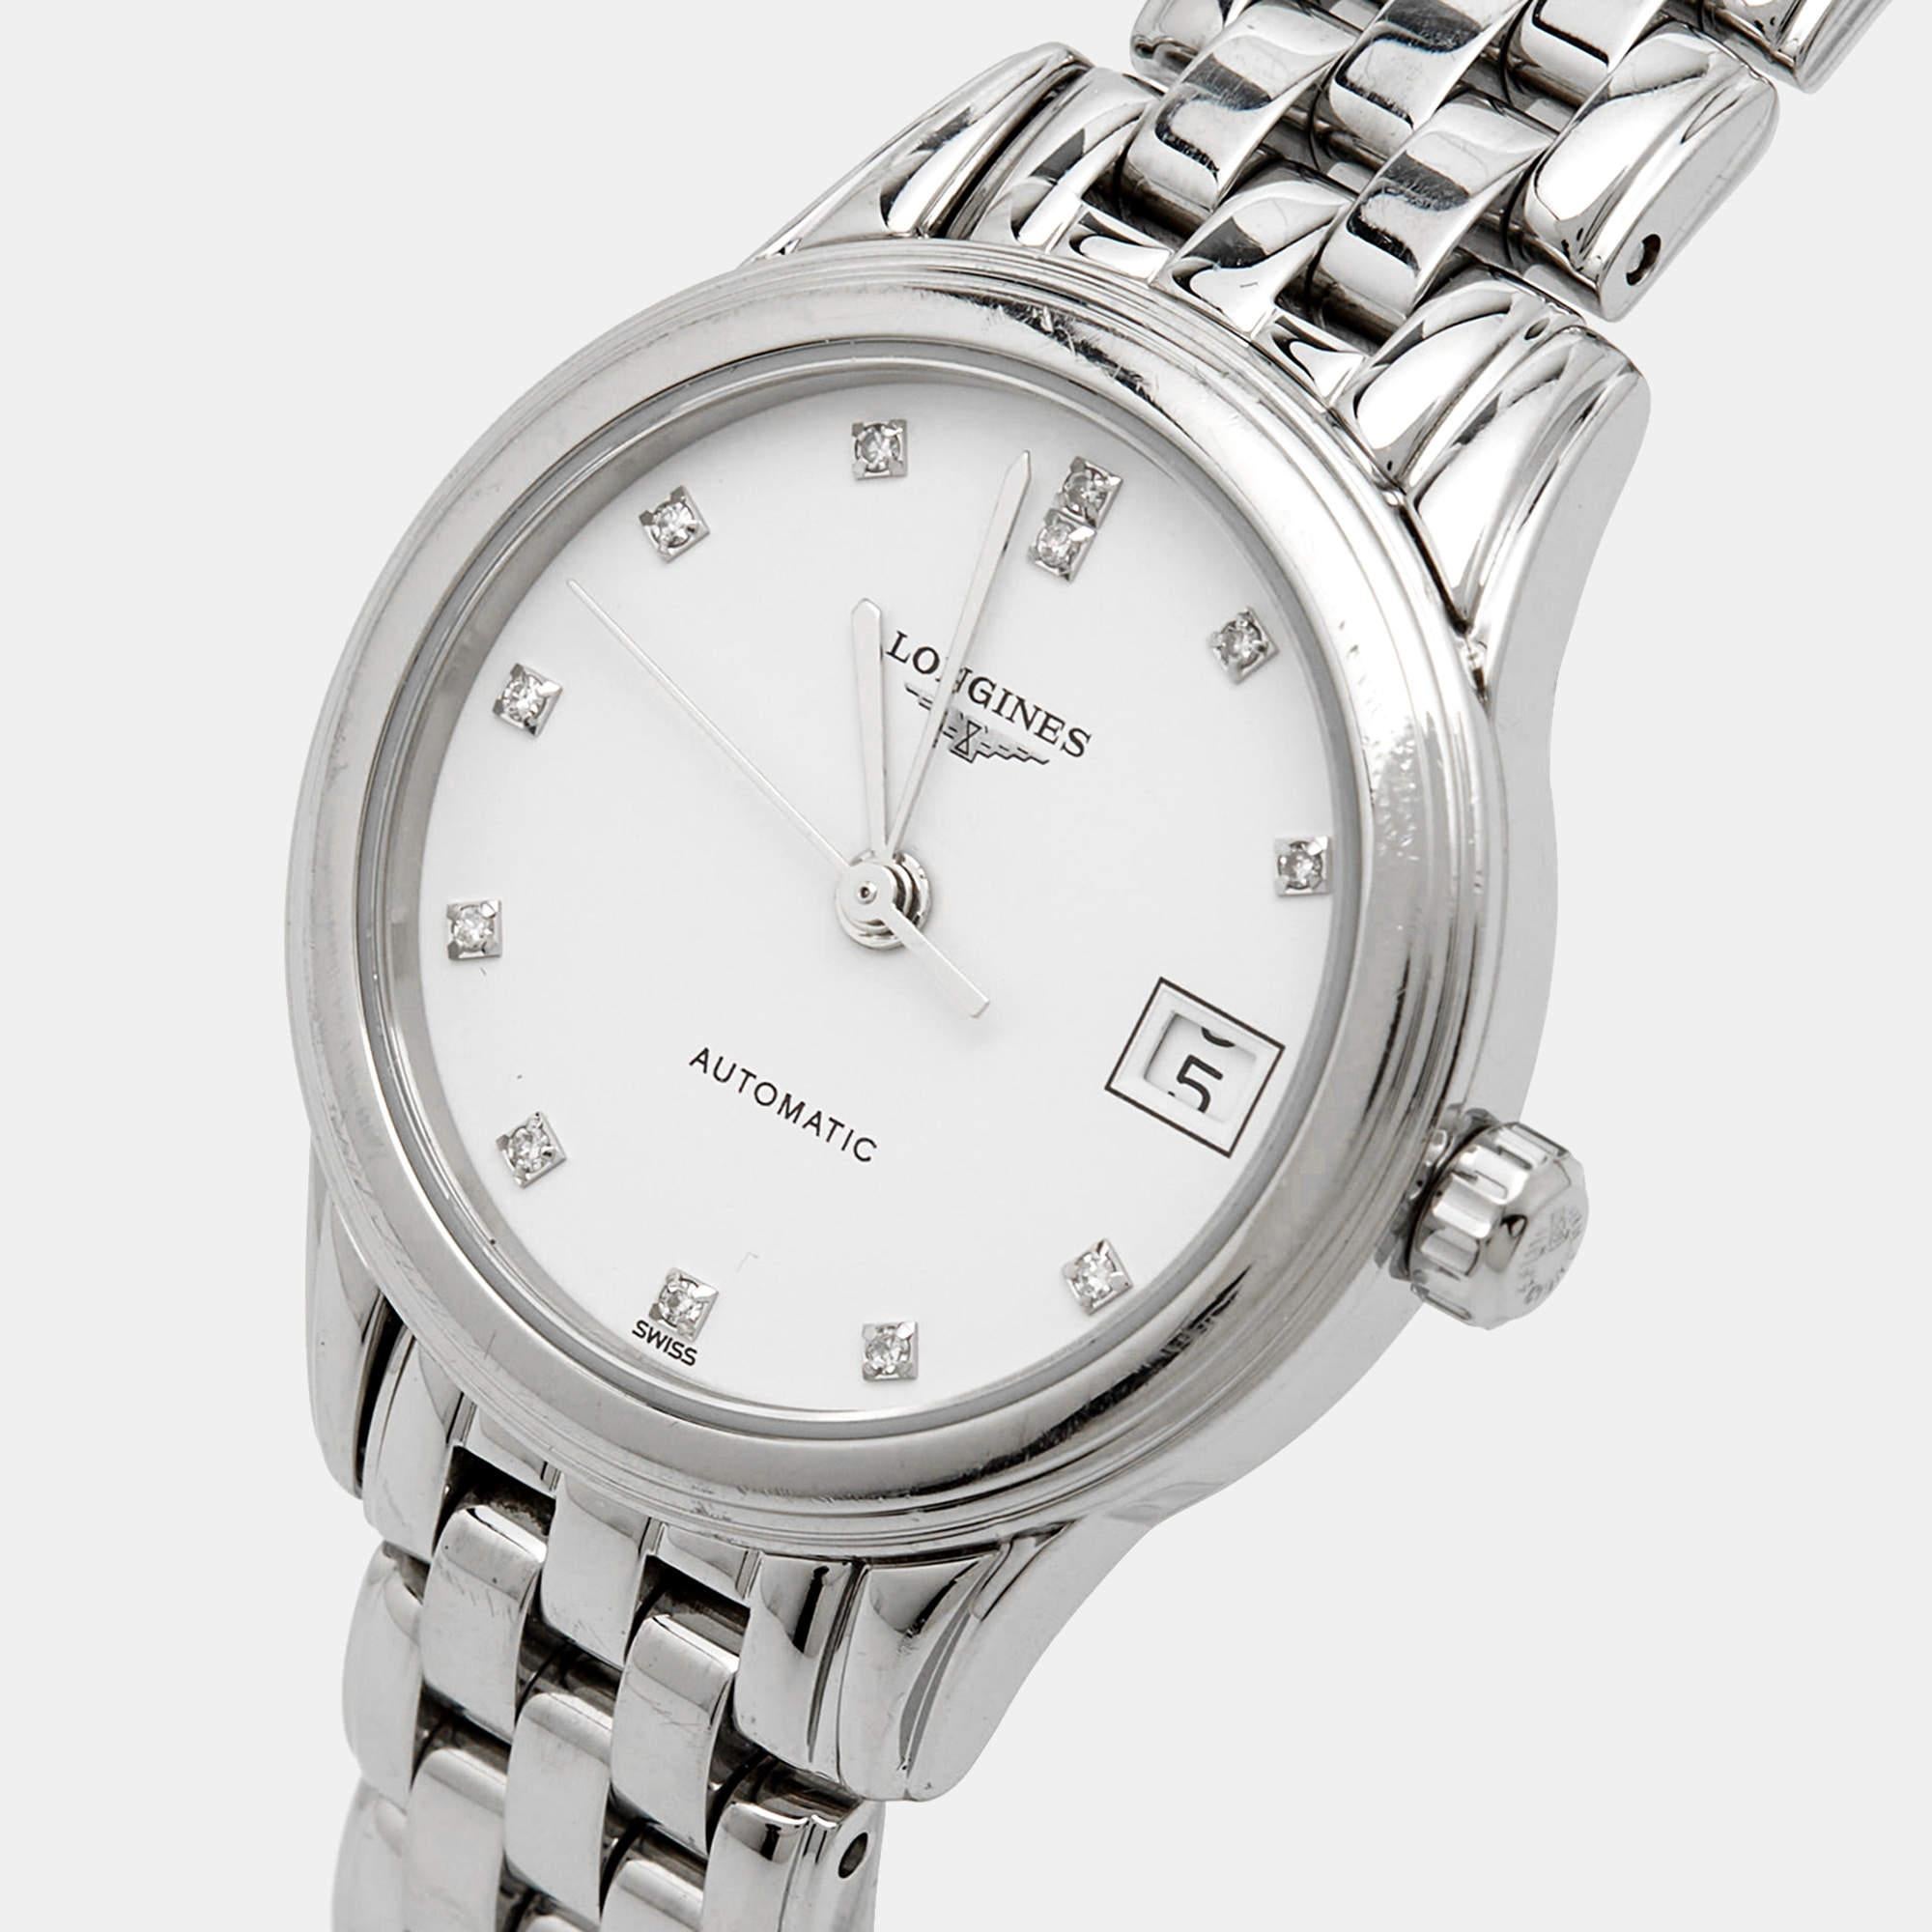 Dieser authentische Luxus-Zeitmesser hilft Ihnen, jeden Moment zu genießen! Diese mit viel Geschick aus hochwertigen Materialien hergestellte Uhr ist ein funktionelles Accessoire, das Ihnen einen luxuriösen Stil verleiht und gleichzeitig die Zeit